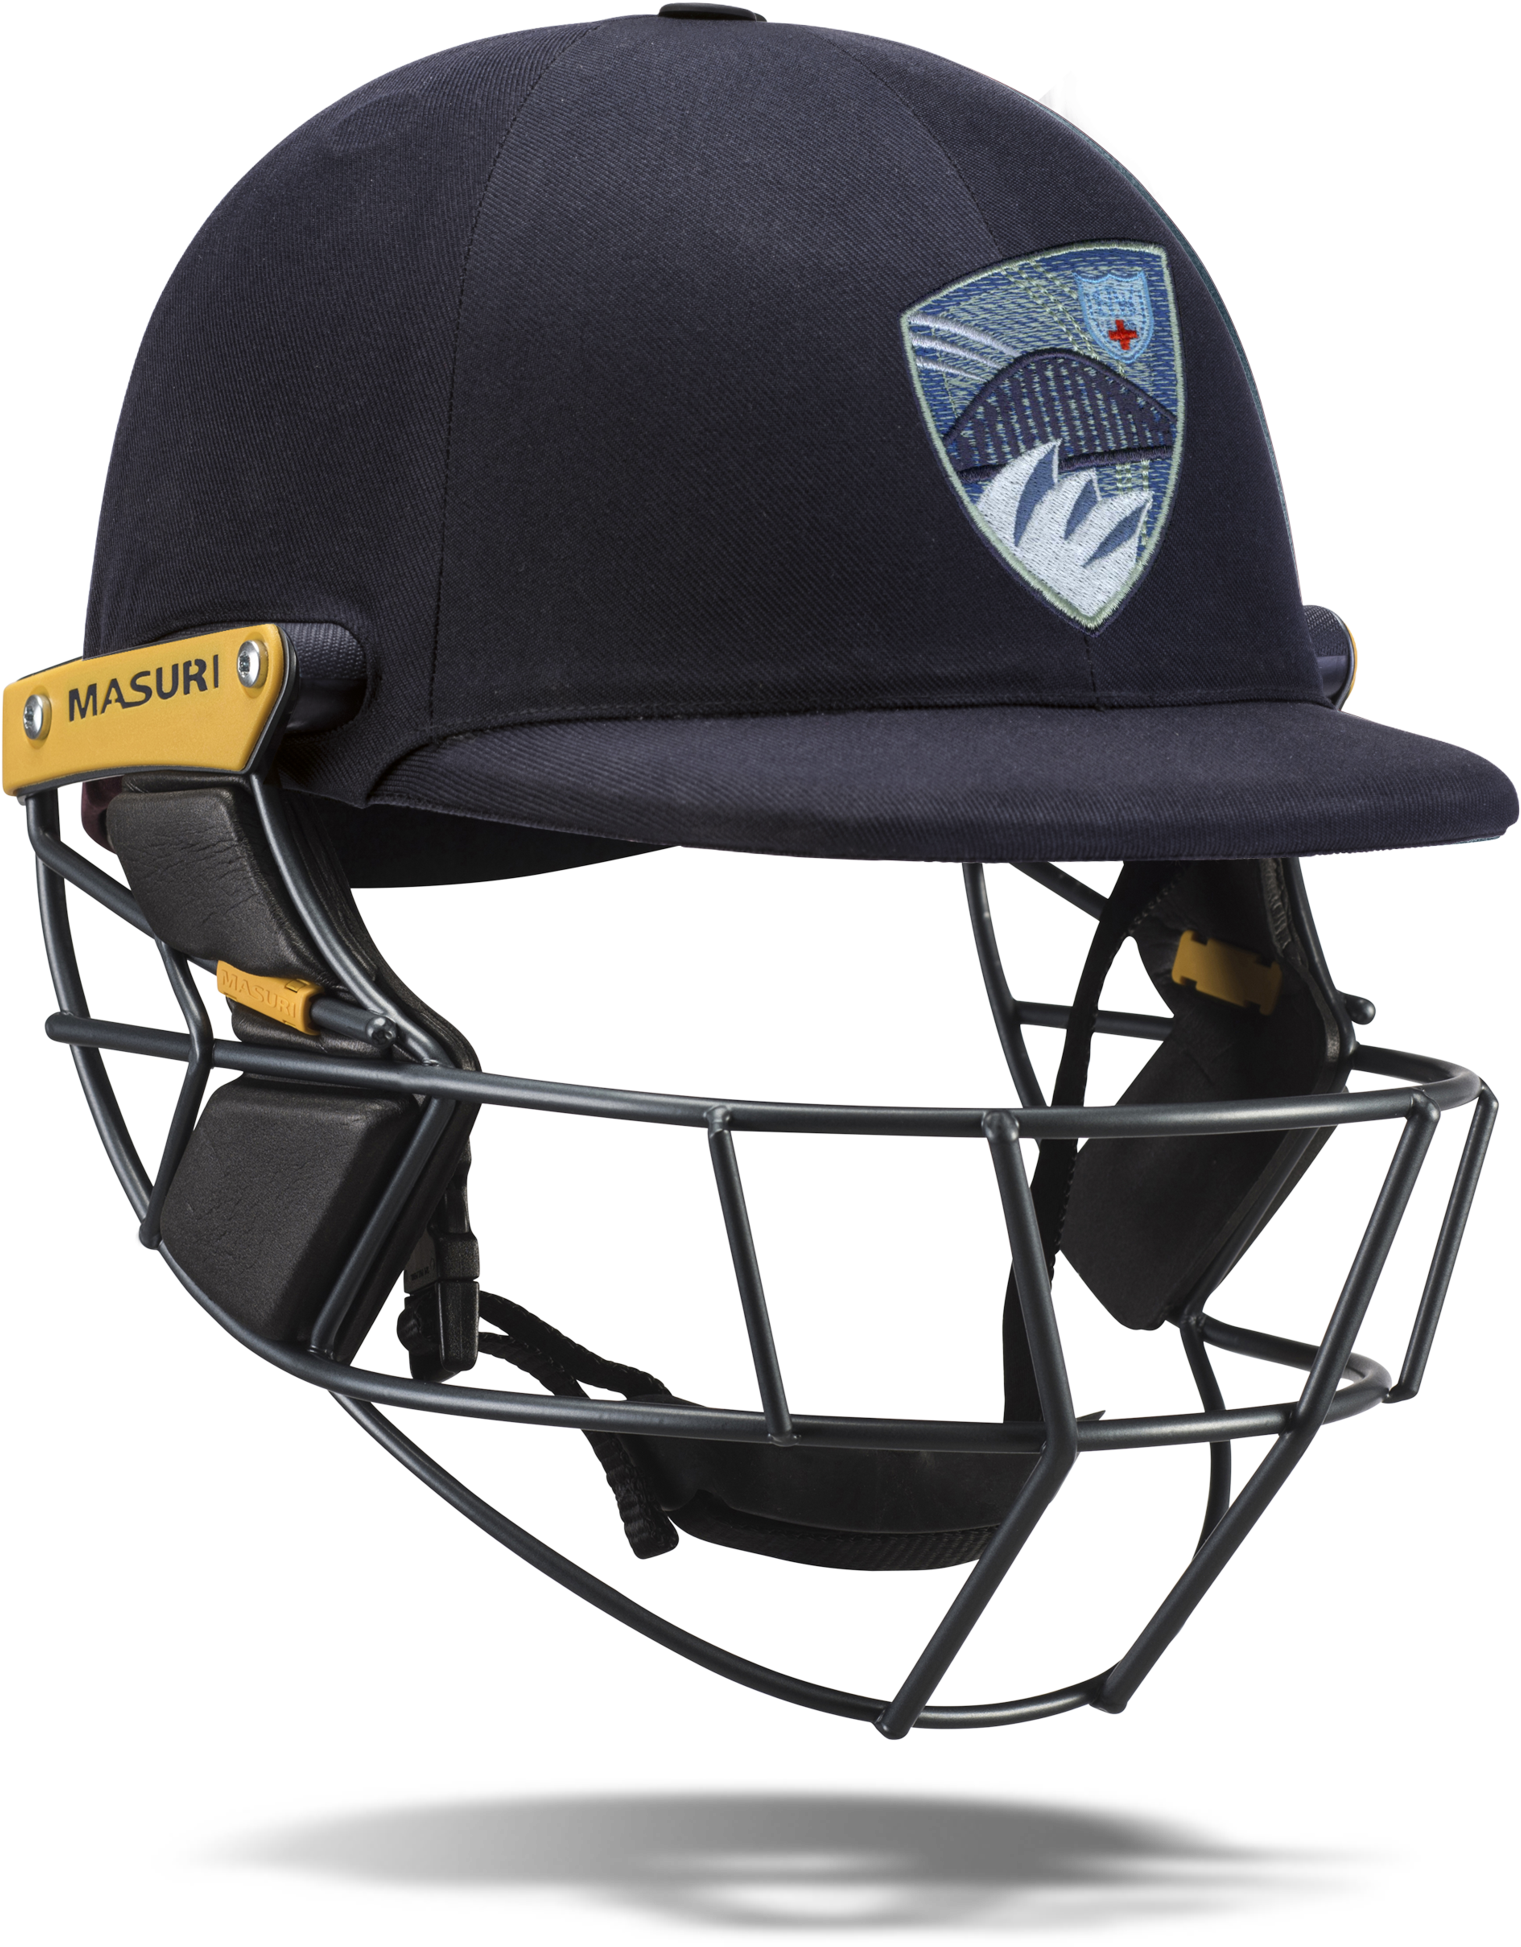 Cricket Helmet PNG Download Image